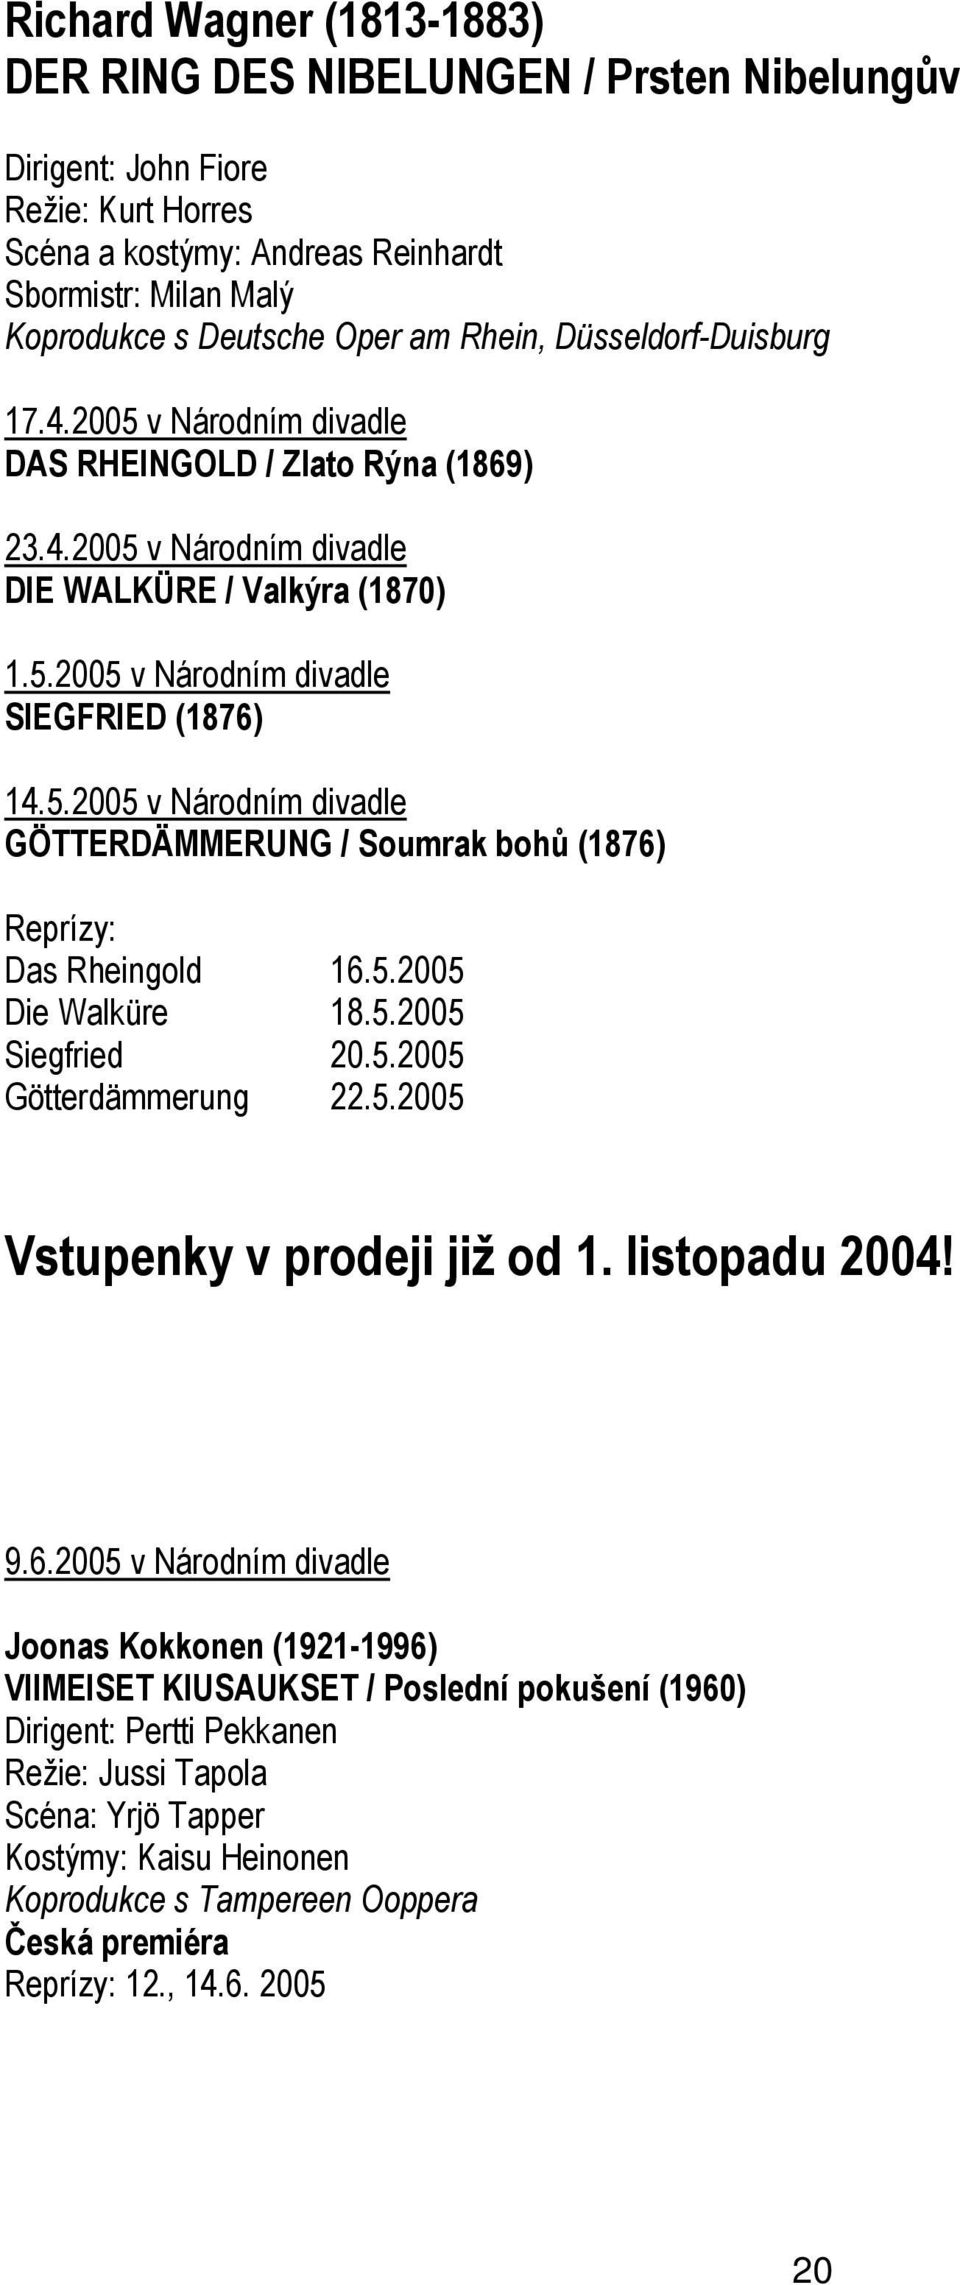 5.2005 Die Walküre 18.5.2005 Siegfried 20.5.2005 Götterdämmerung 22.5.2005 Vstupenky v prodeji již od 1. listopadu 2004! 9.6.